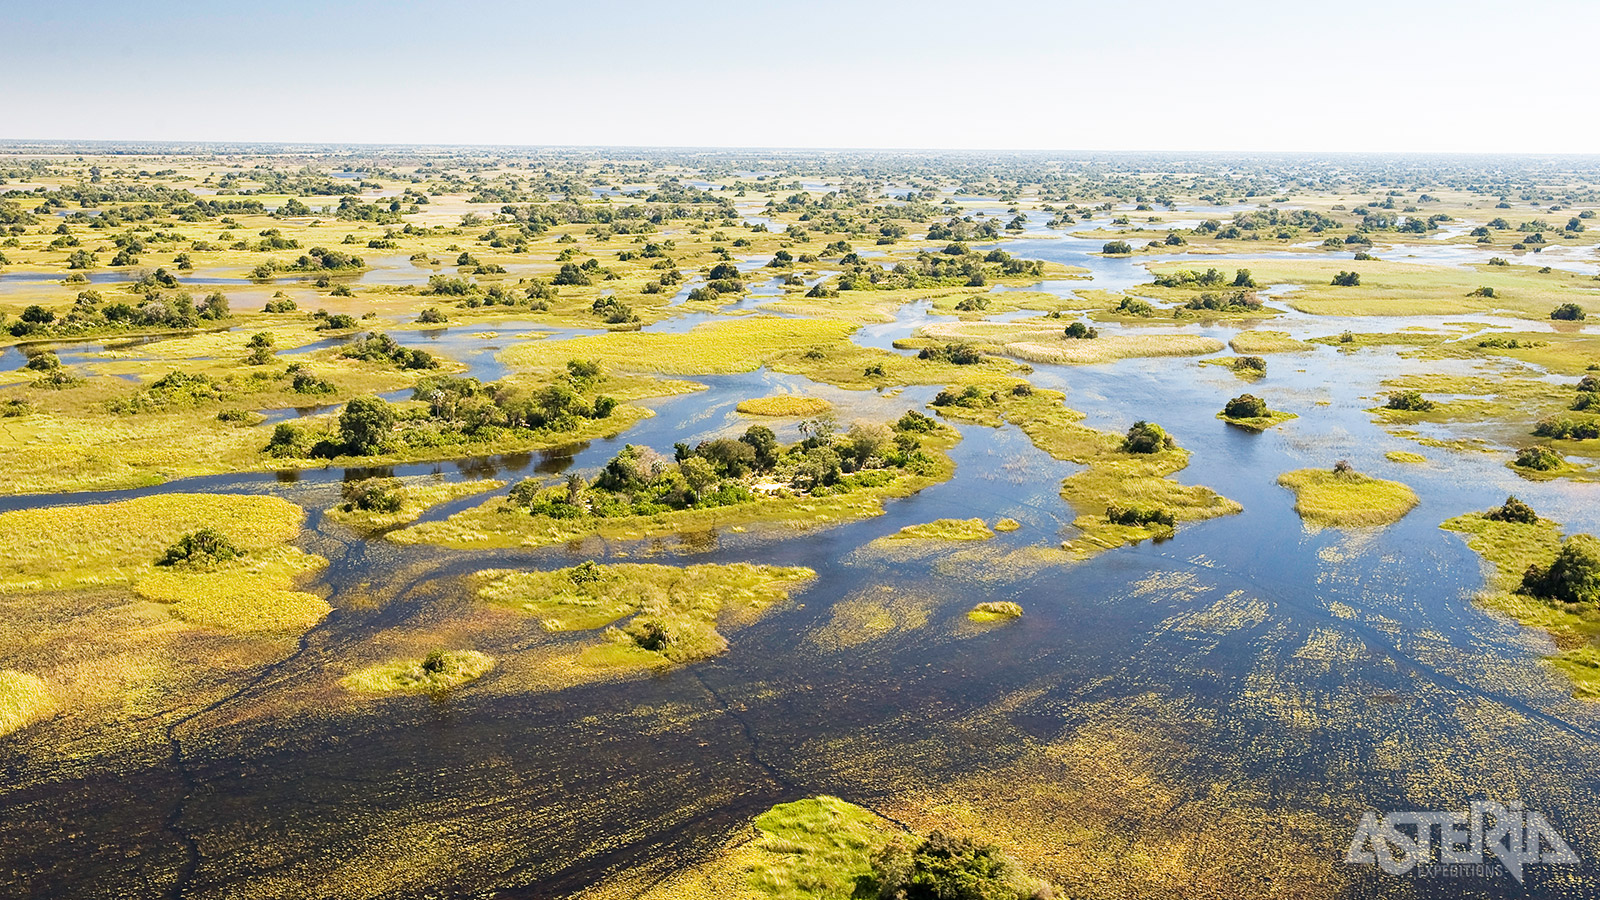 De Okavango Delta is de grootste inlandse delta ter wereld